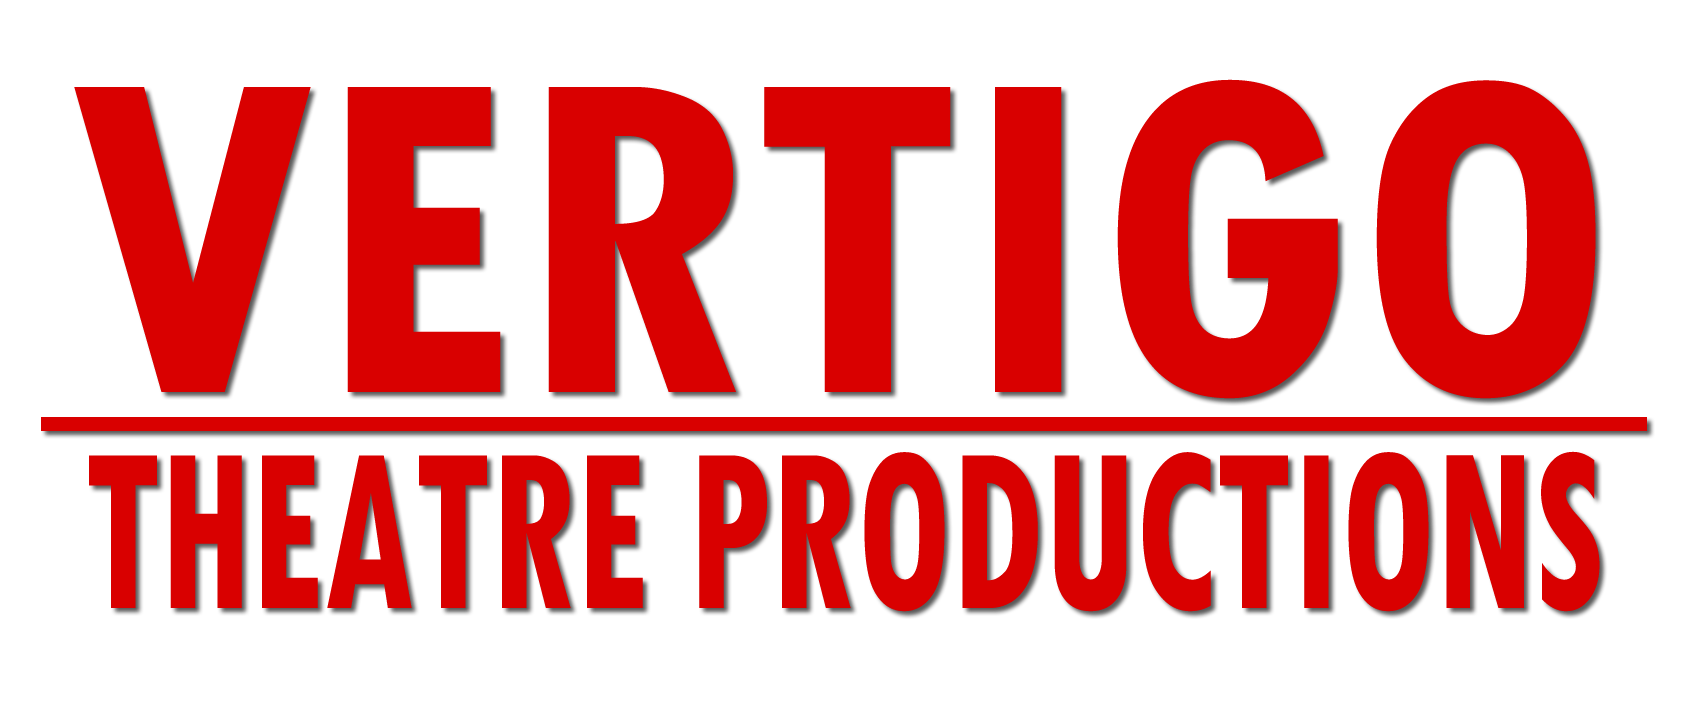 Vertigo Theatre Productions